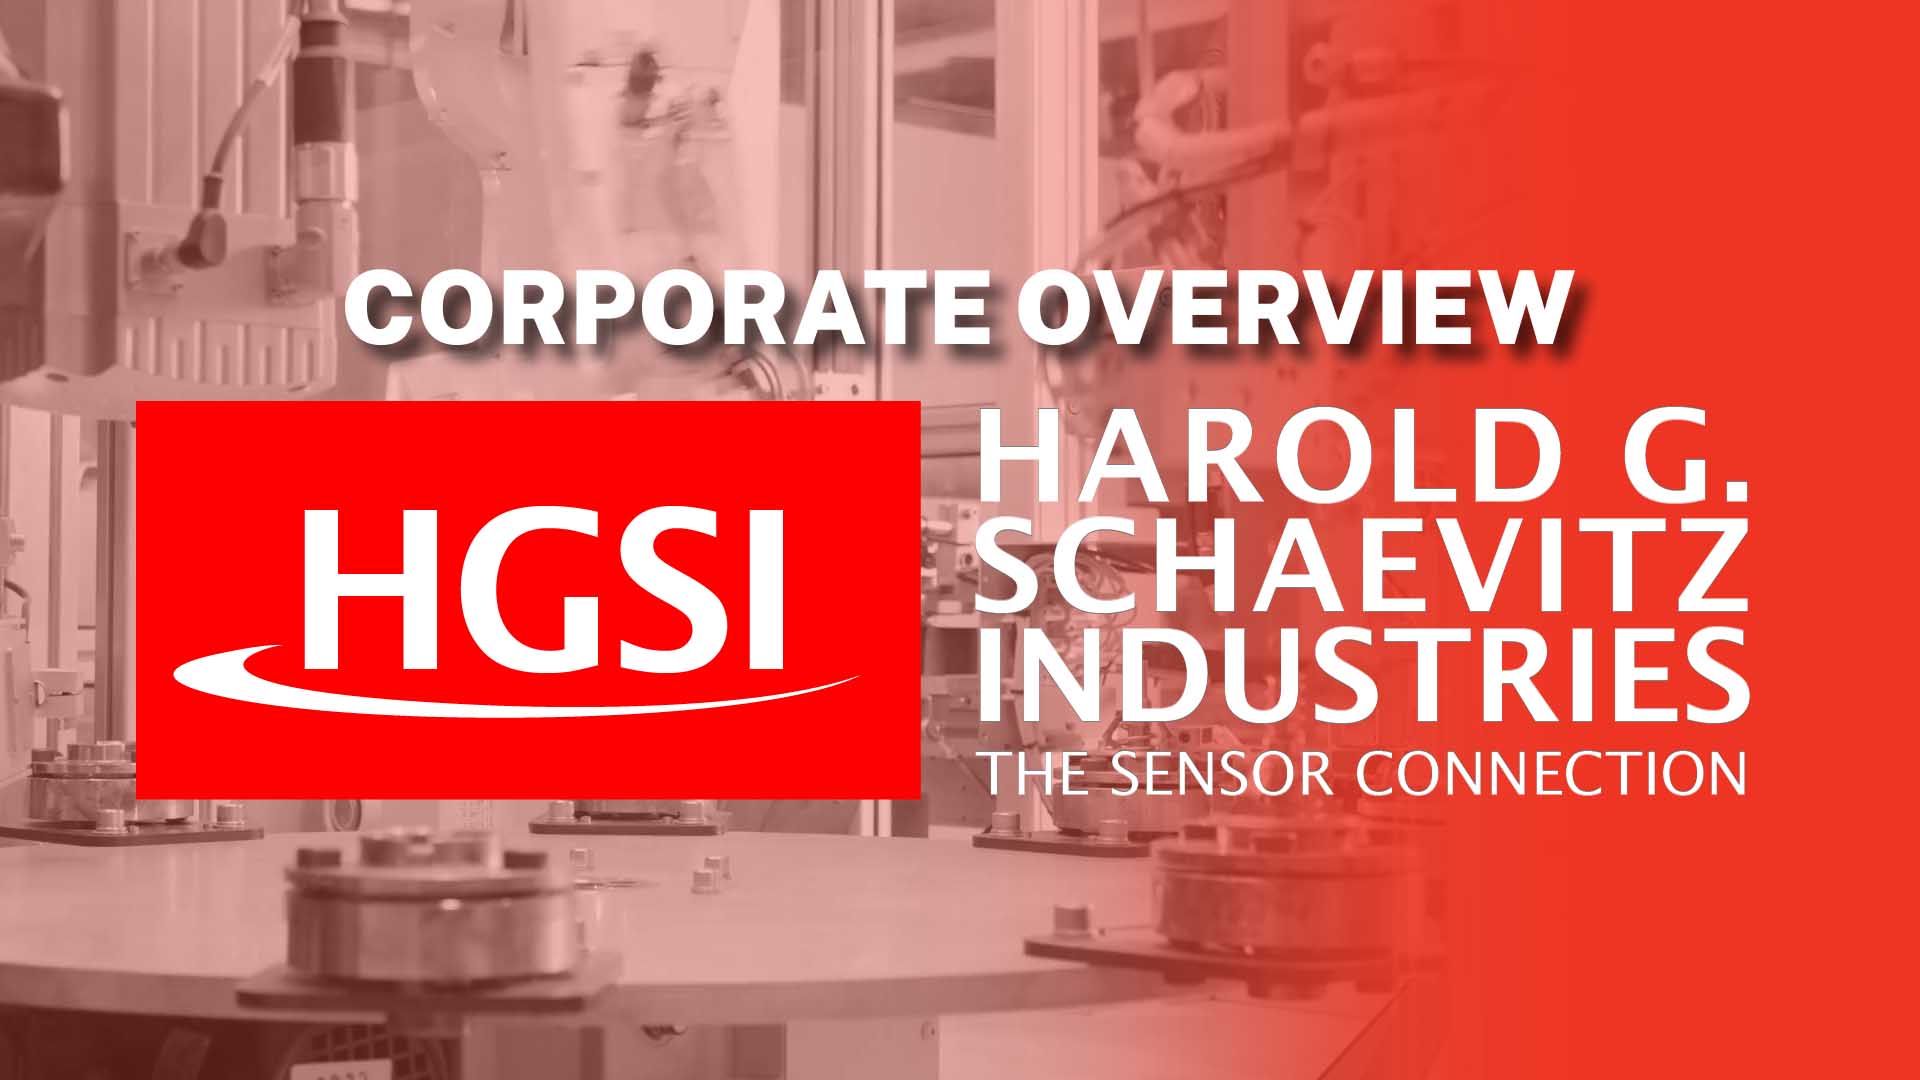 Harold G Schaevitz Industries Corporate Overview Video